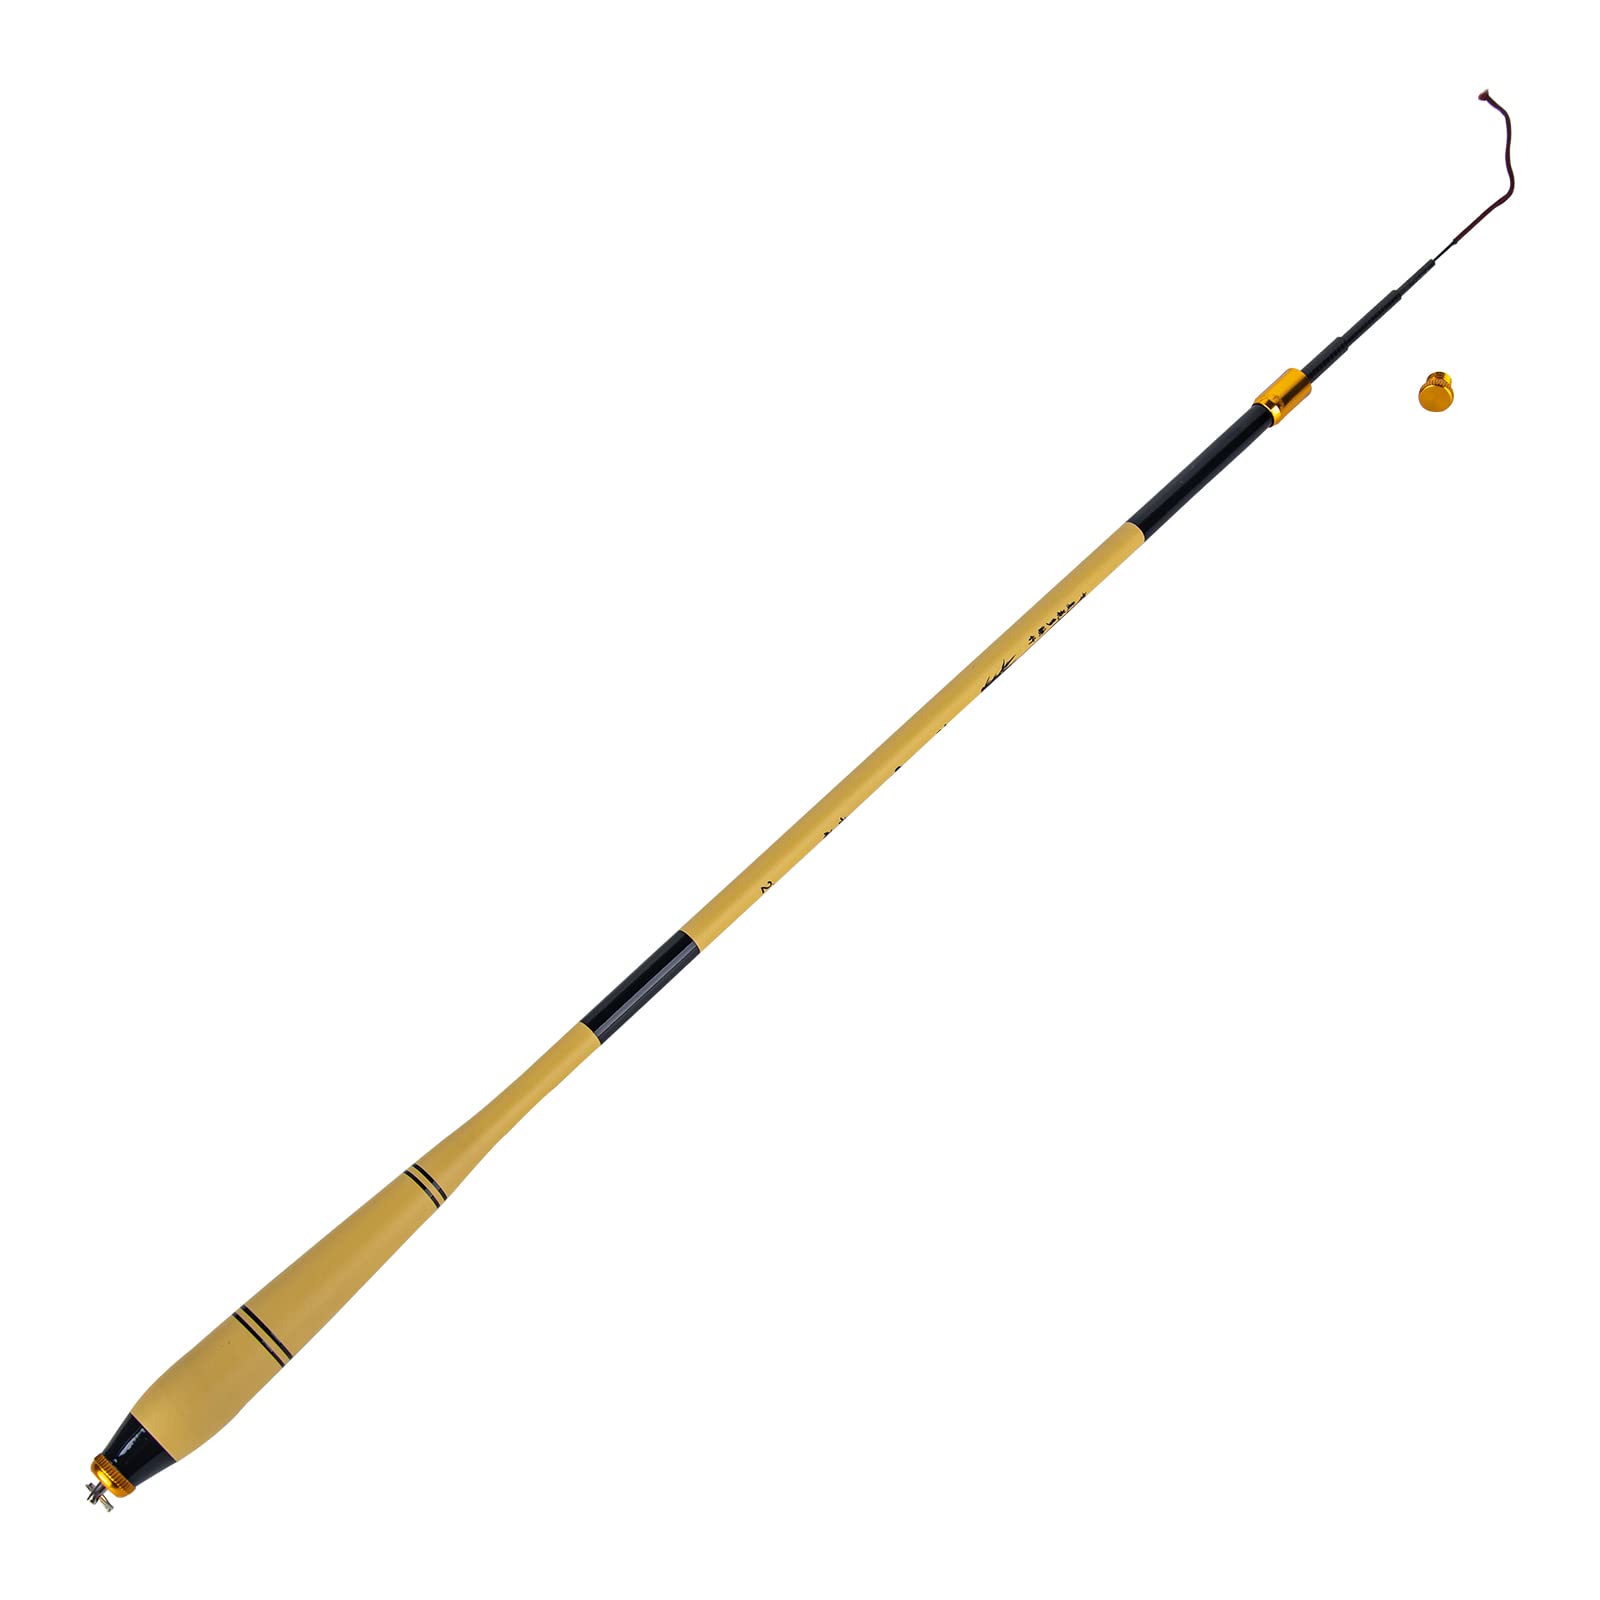 Telescopic Fishing Rod Portable Travel Fishing Rod Carbon Fiber